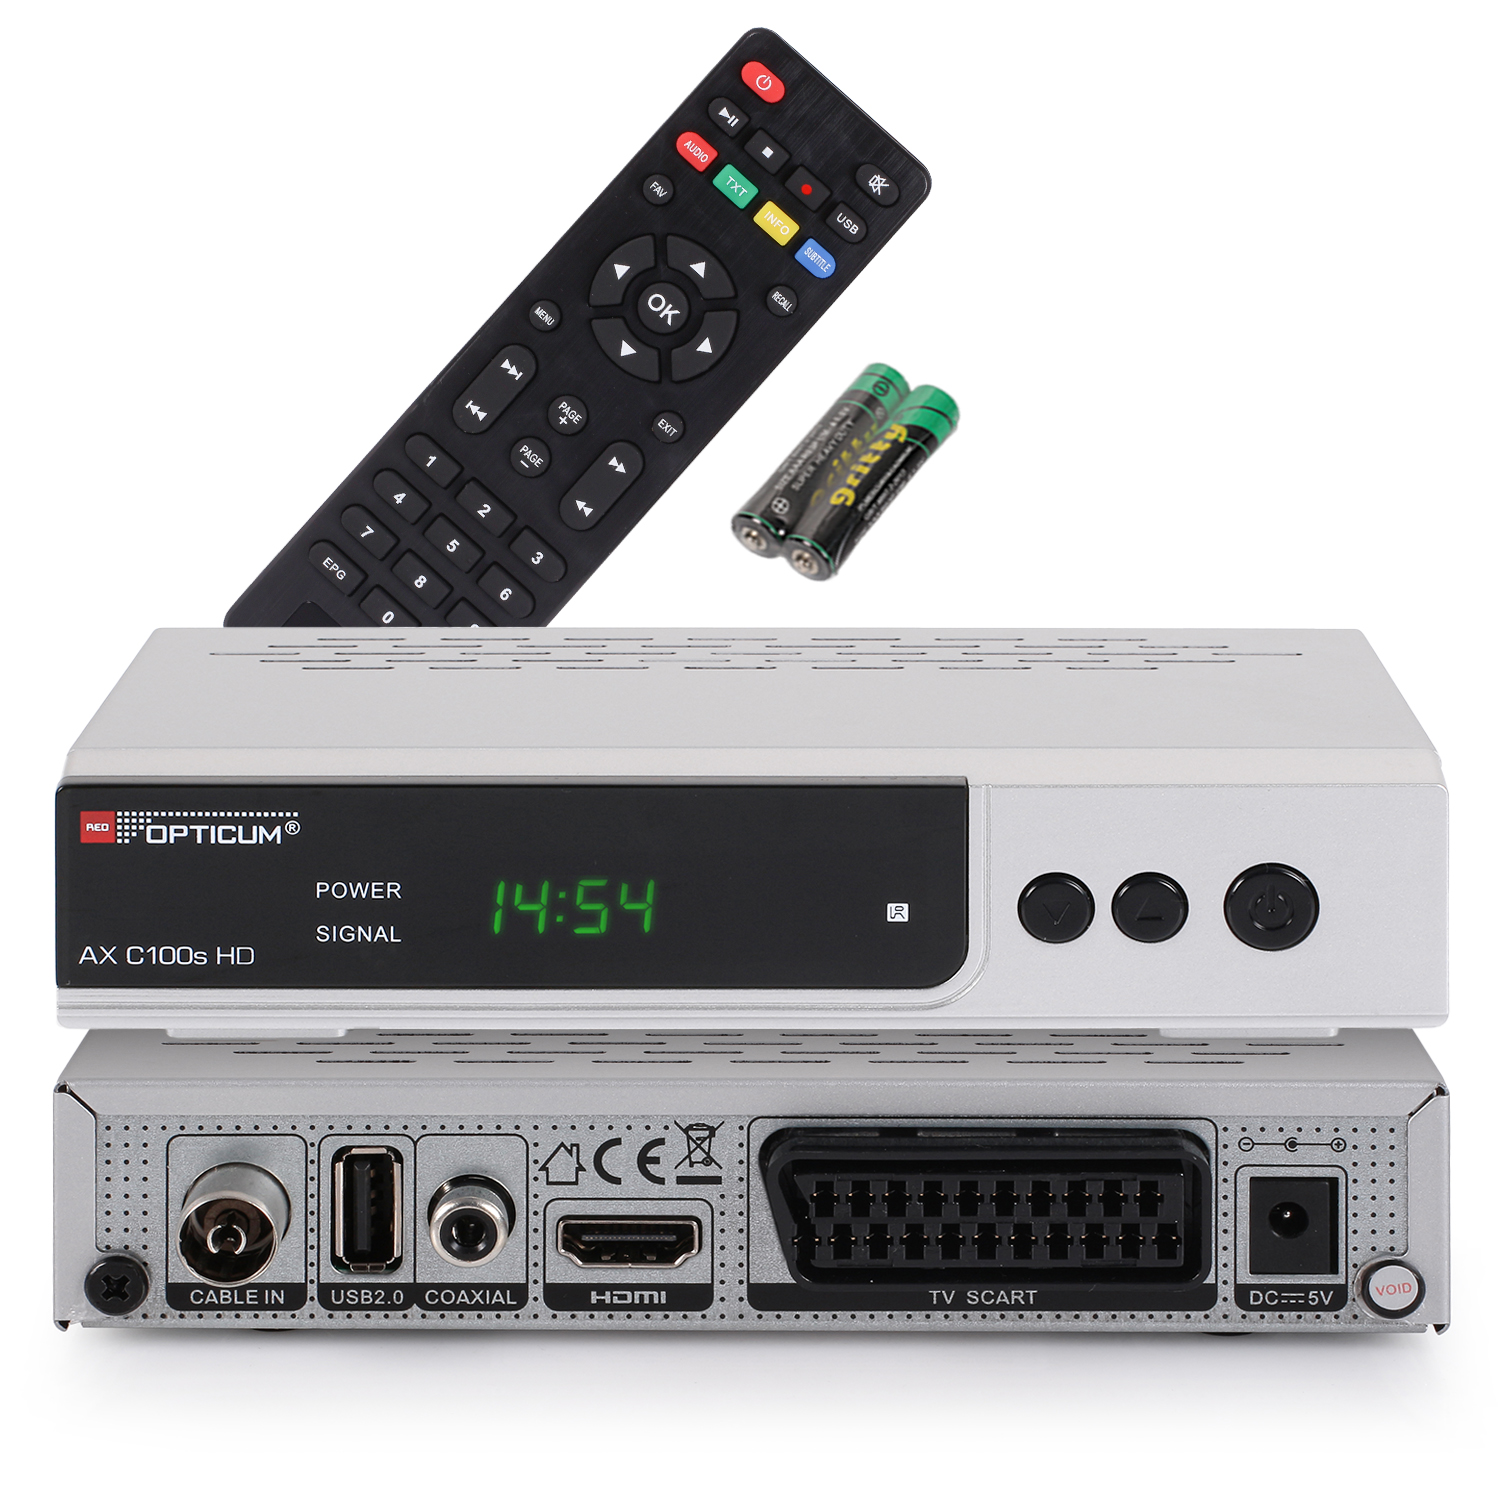 PVR-Aufnahmefunktion RED HD-EPG-HDMI-USB-SCART mit Kabelreceiver C100s OPTICUM PVR-Funktion, Kabel-Receiver HD DVB-C, Receiver (HDTV, silber) I DVB-C2, Digitaler AX DVB-C